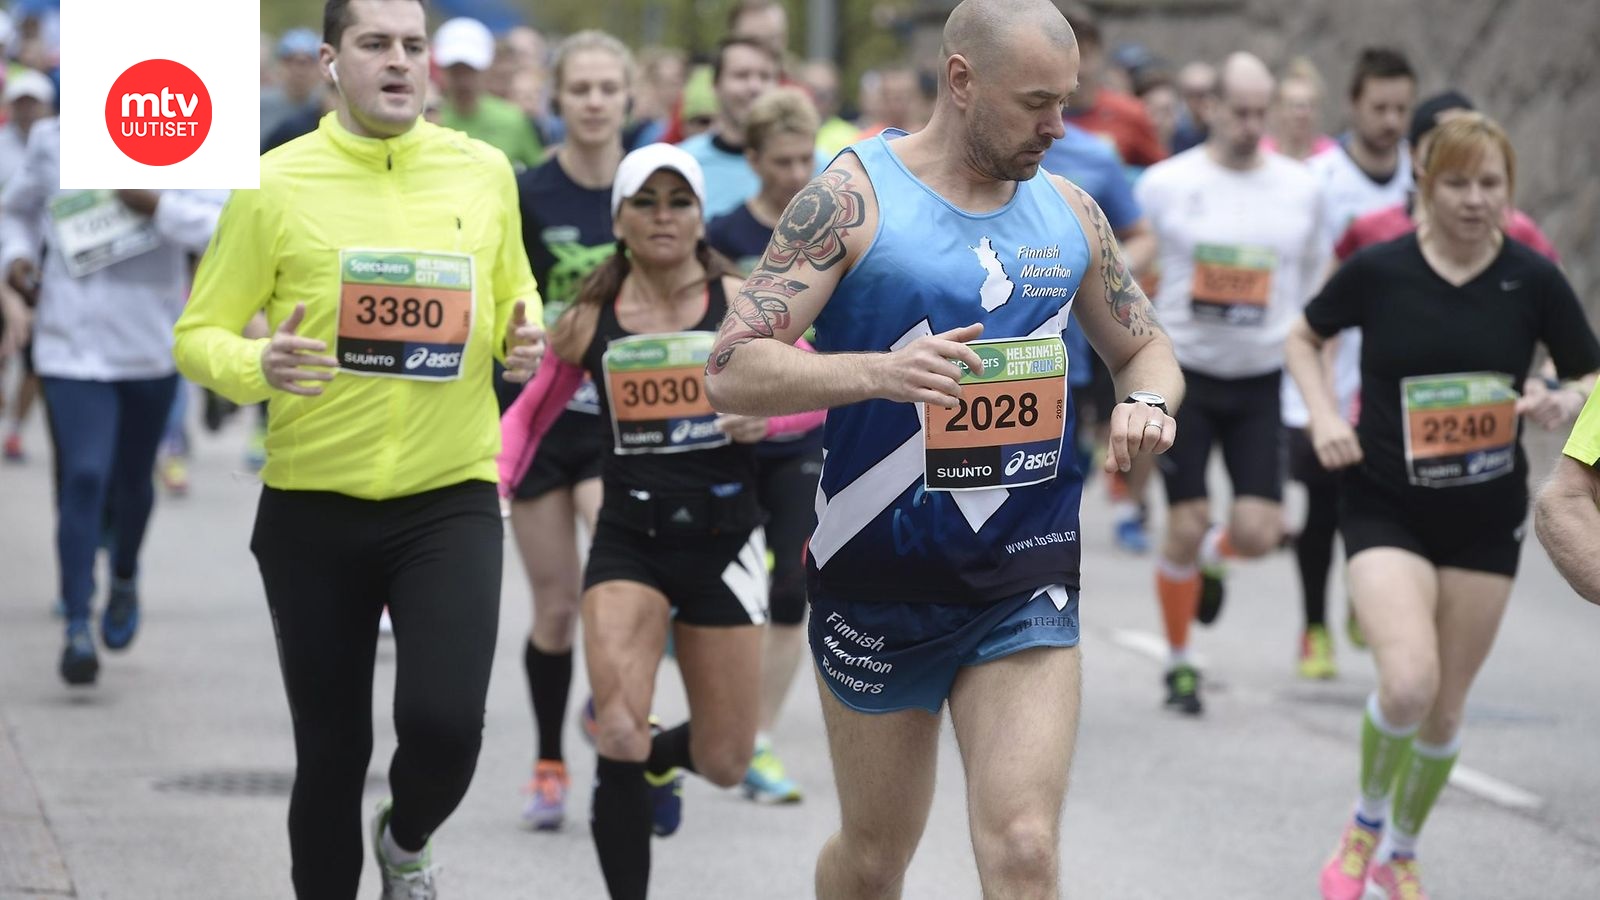 Urheilumatkailu kasvussa – näissä kaupungeissa suomalaiset juoksevat  maratoneja 